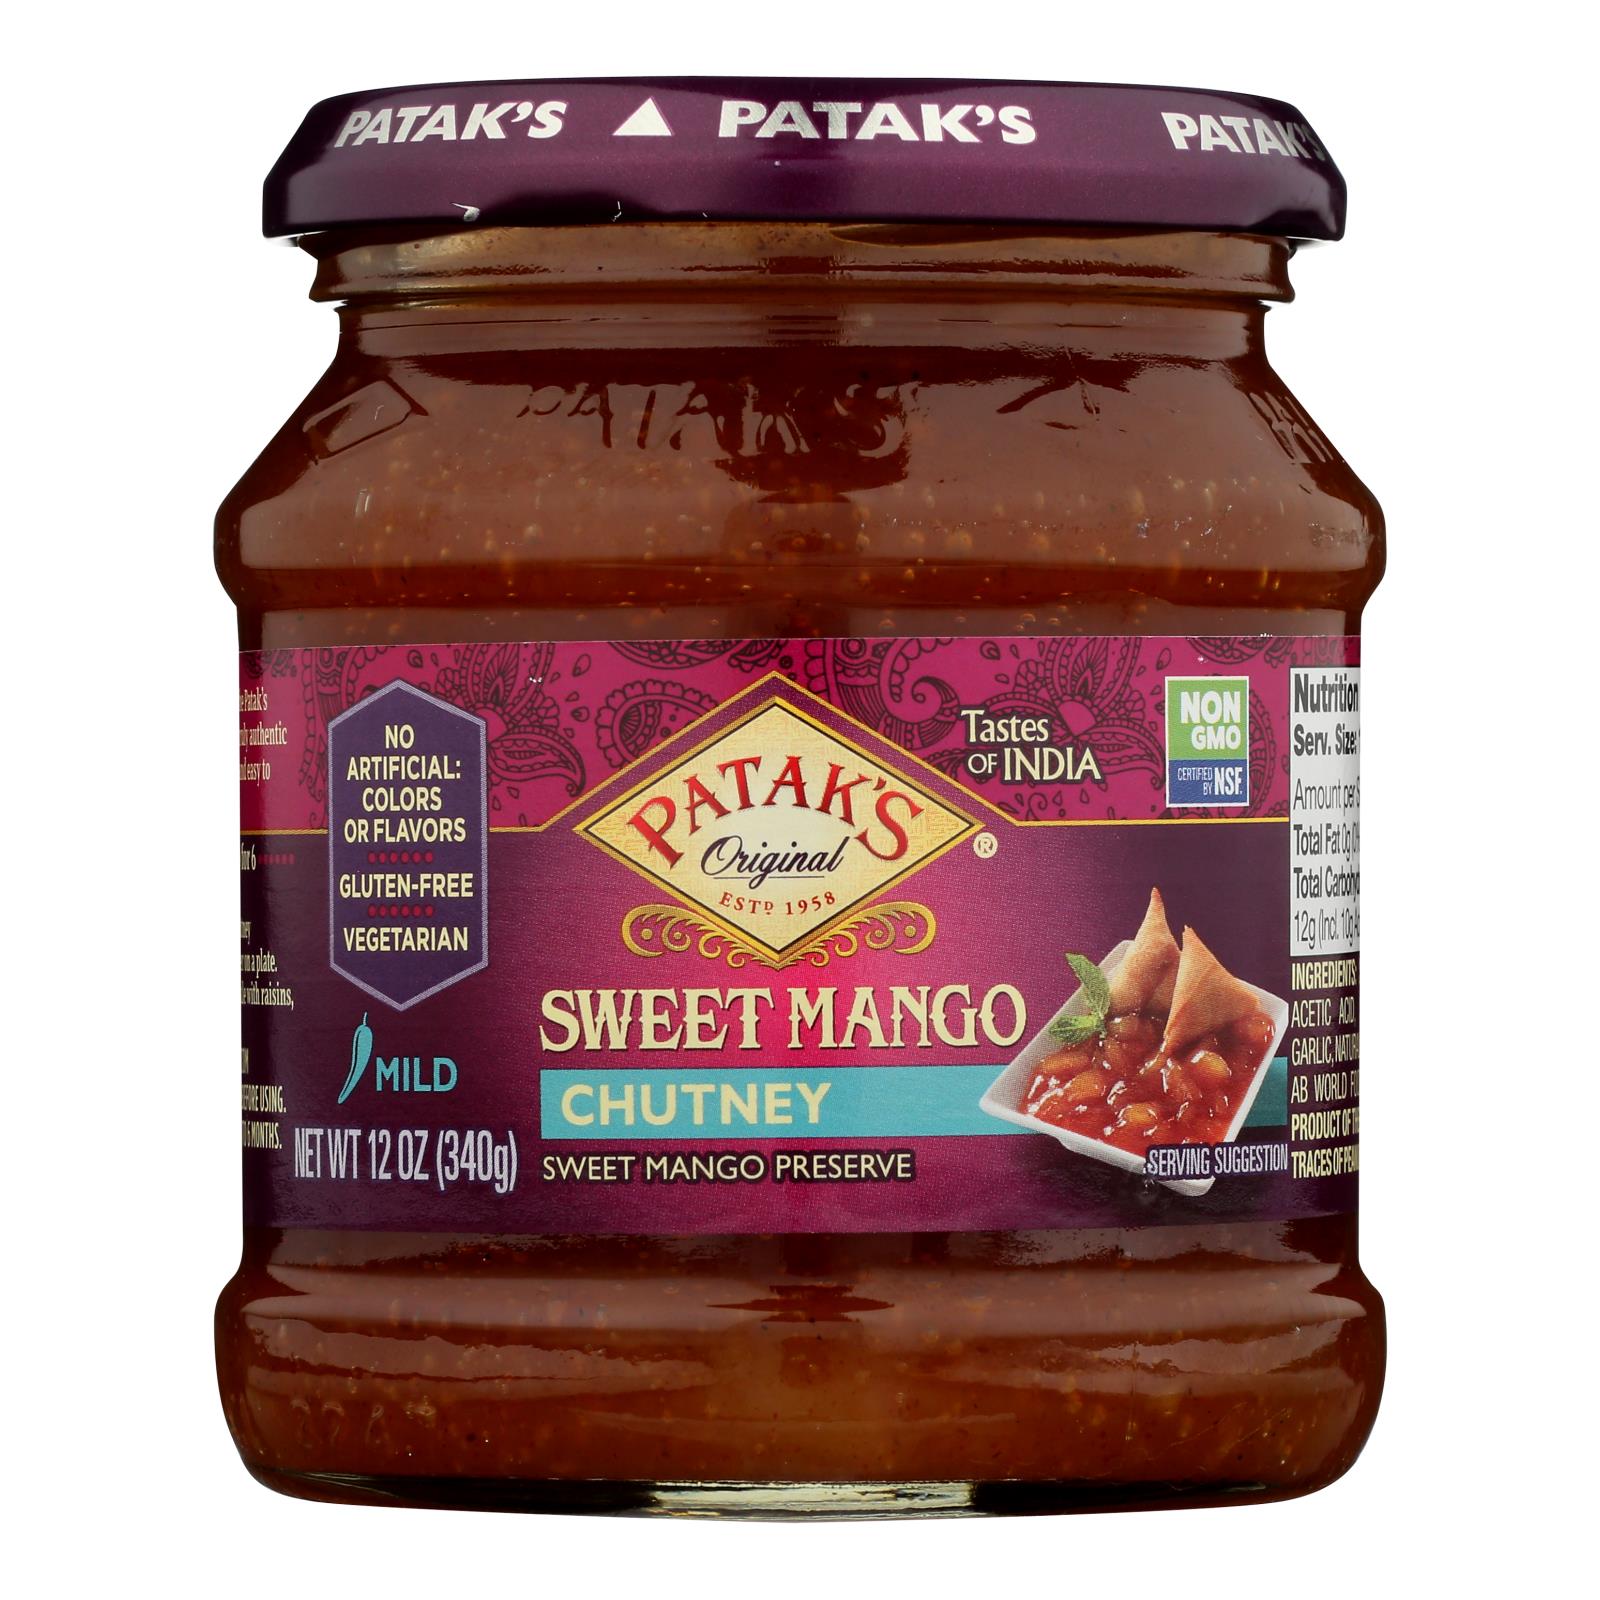 Pataks Chutney - Sweet Mango - Mild - 12 Oz - Case Of 6